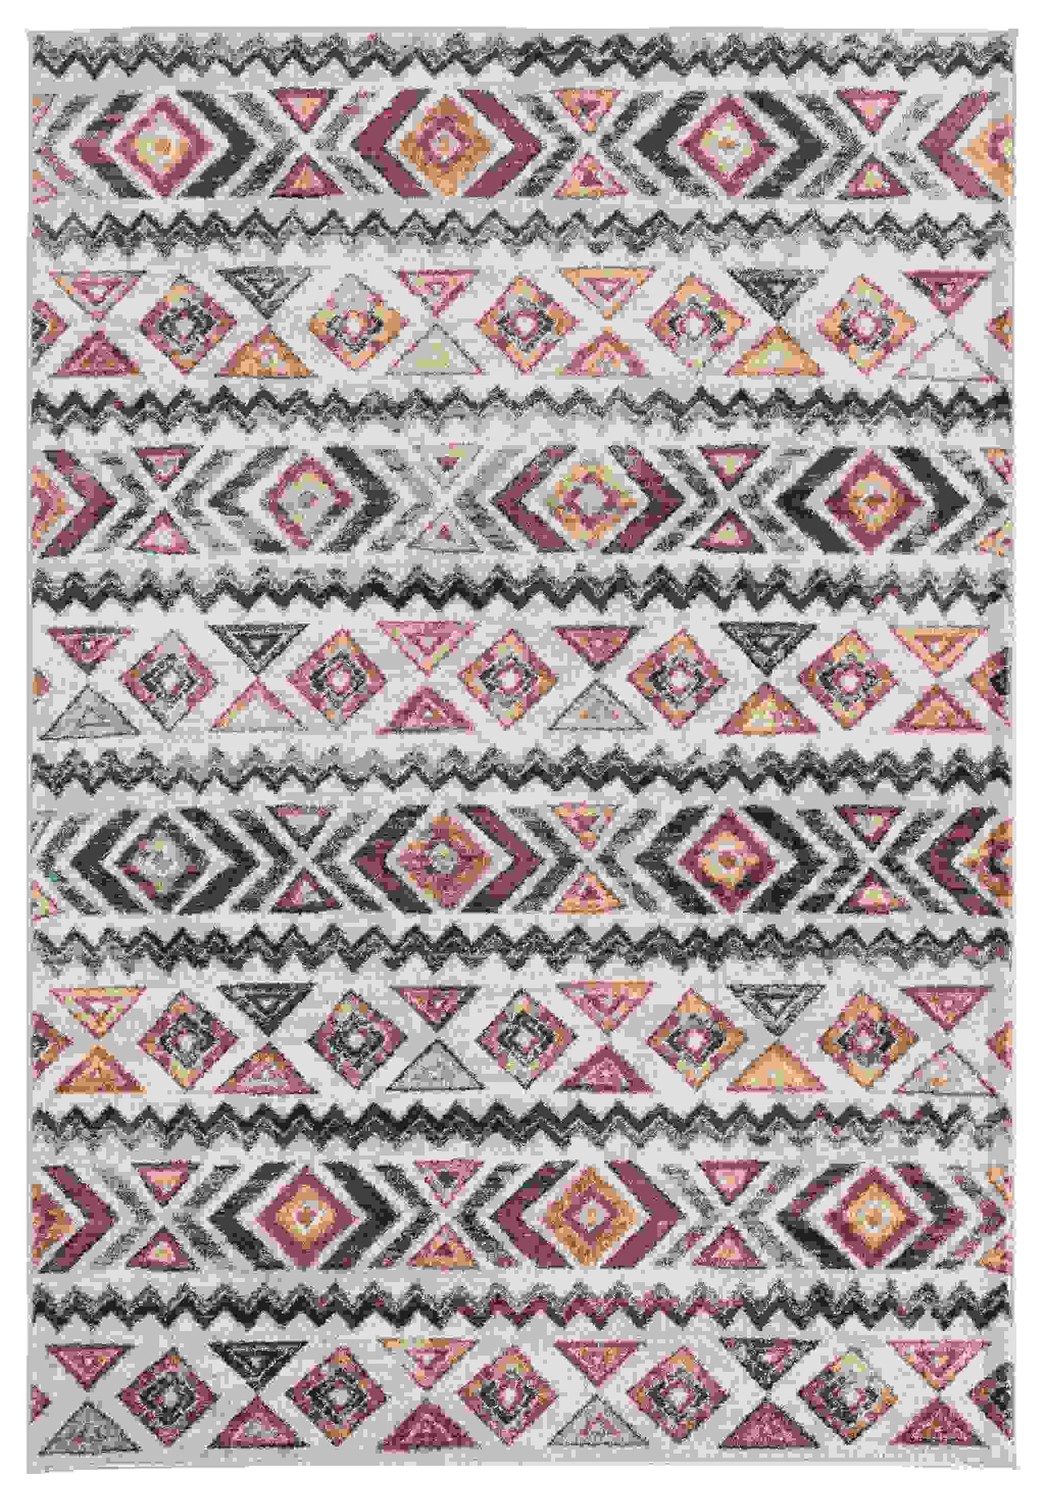 150" x 180" Multicolor Olefin Oversize Rug